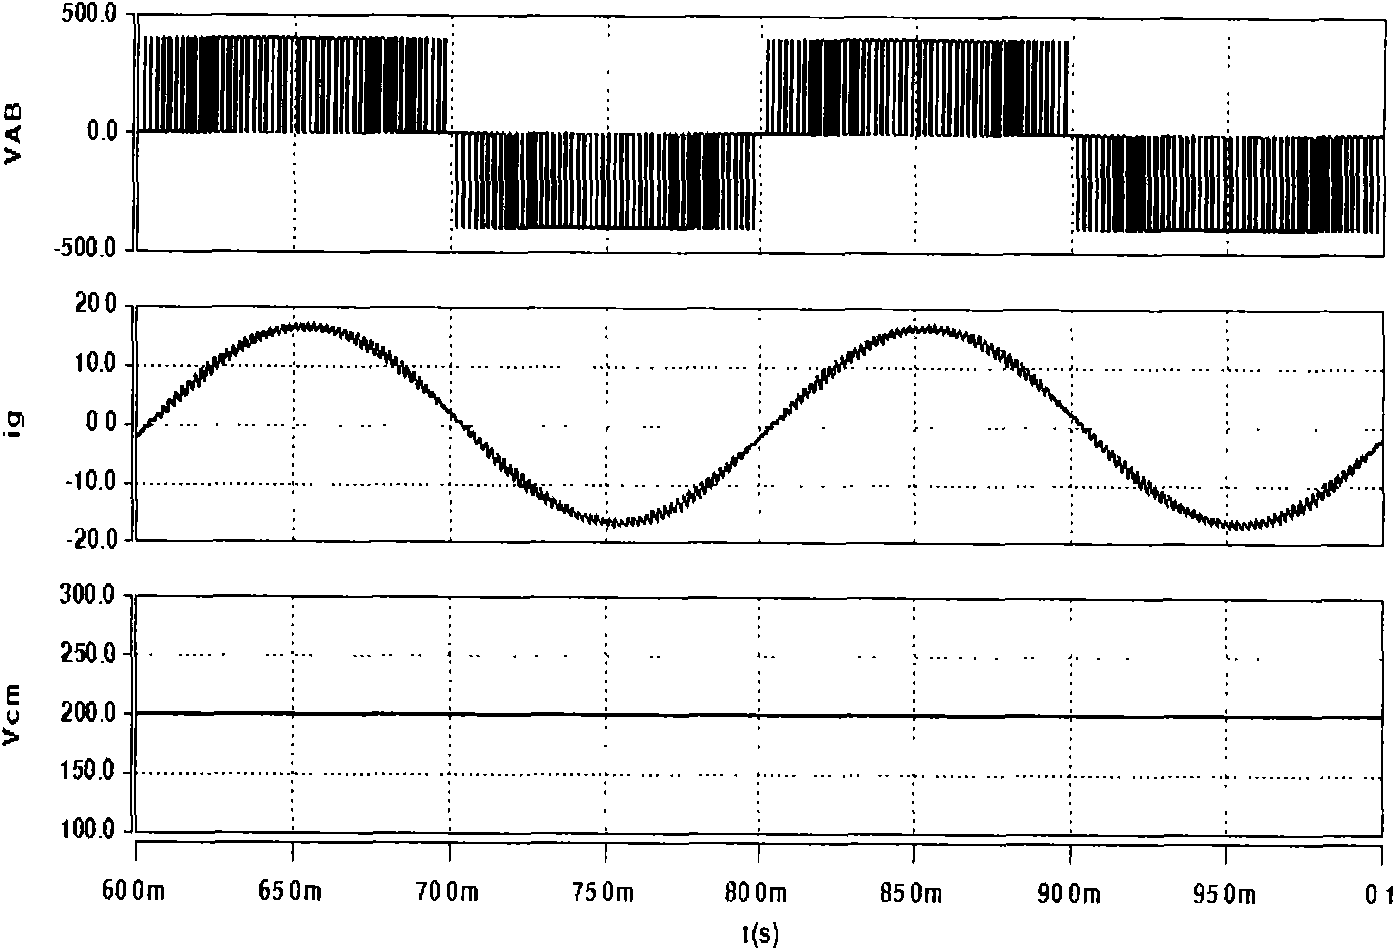 Three-level inverter of single-phase mixed bridge